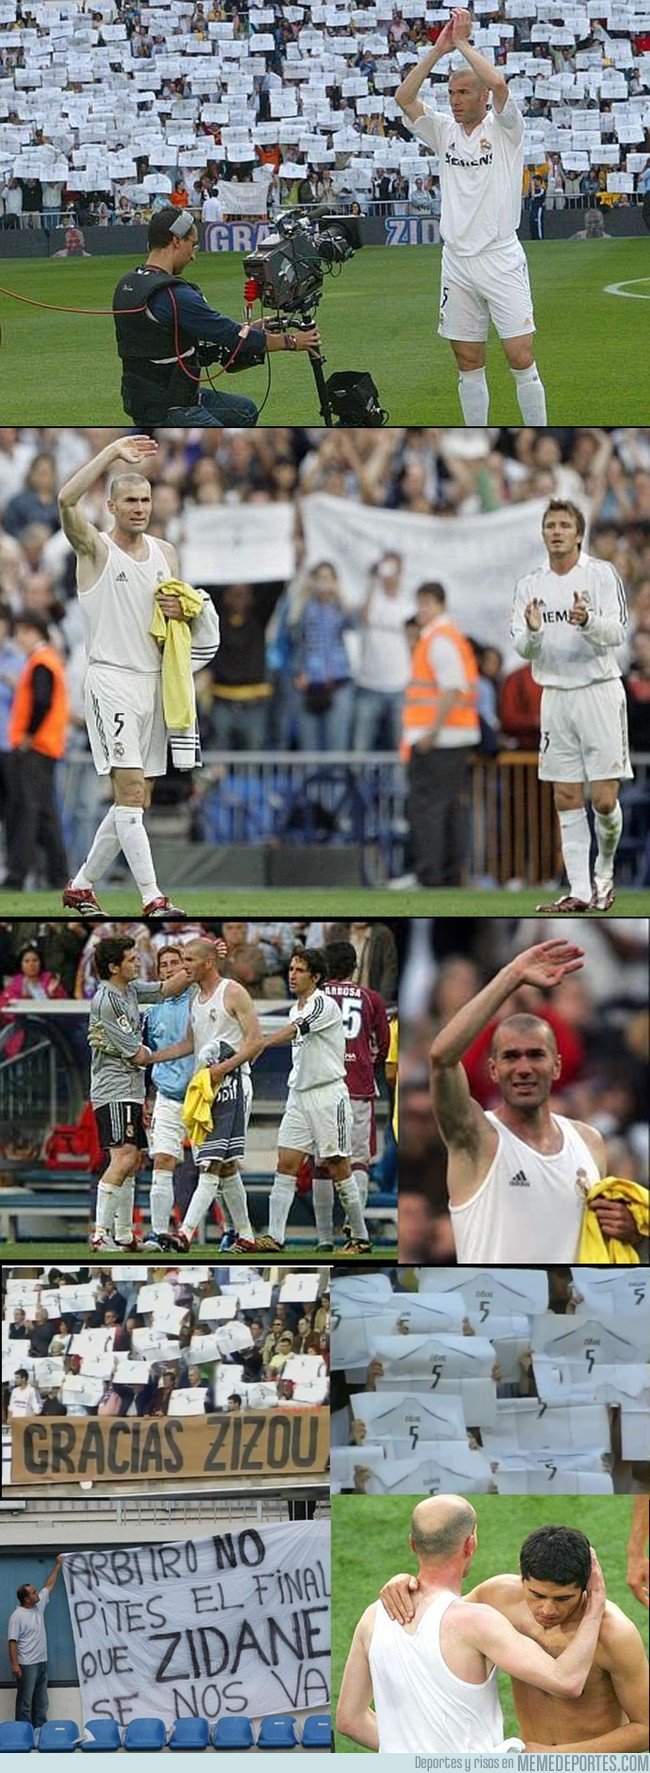 1033224 - Hoy hace 12 años, Zidane se retiró del Real Madrid como jugador